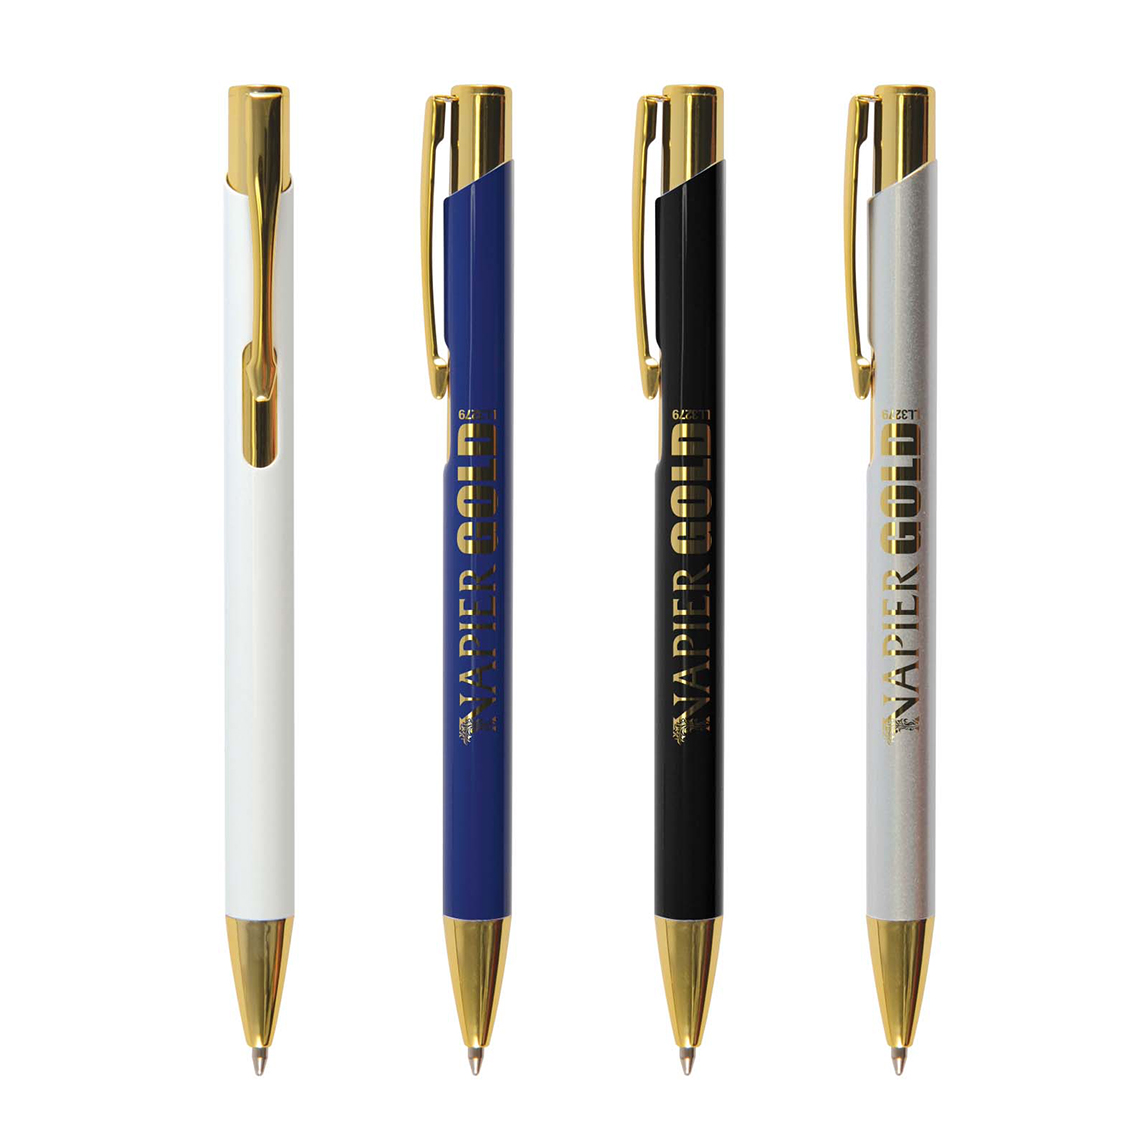 Napier Pen (Gold Edition) Features